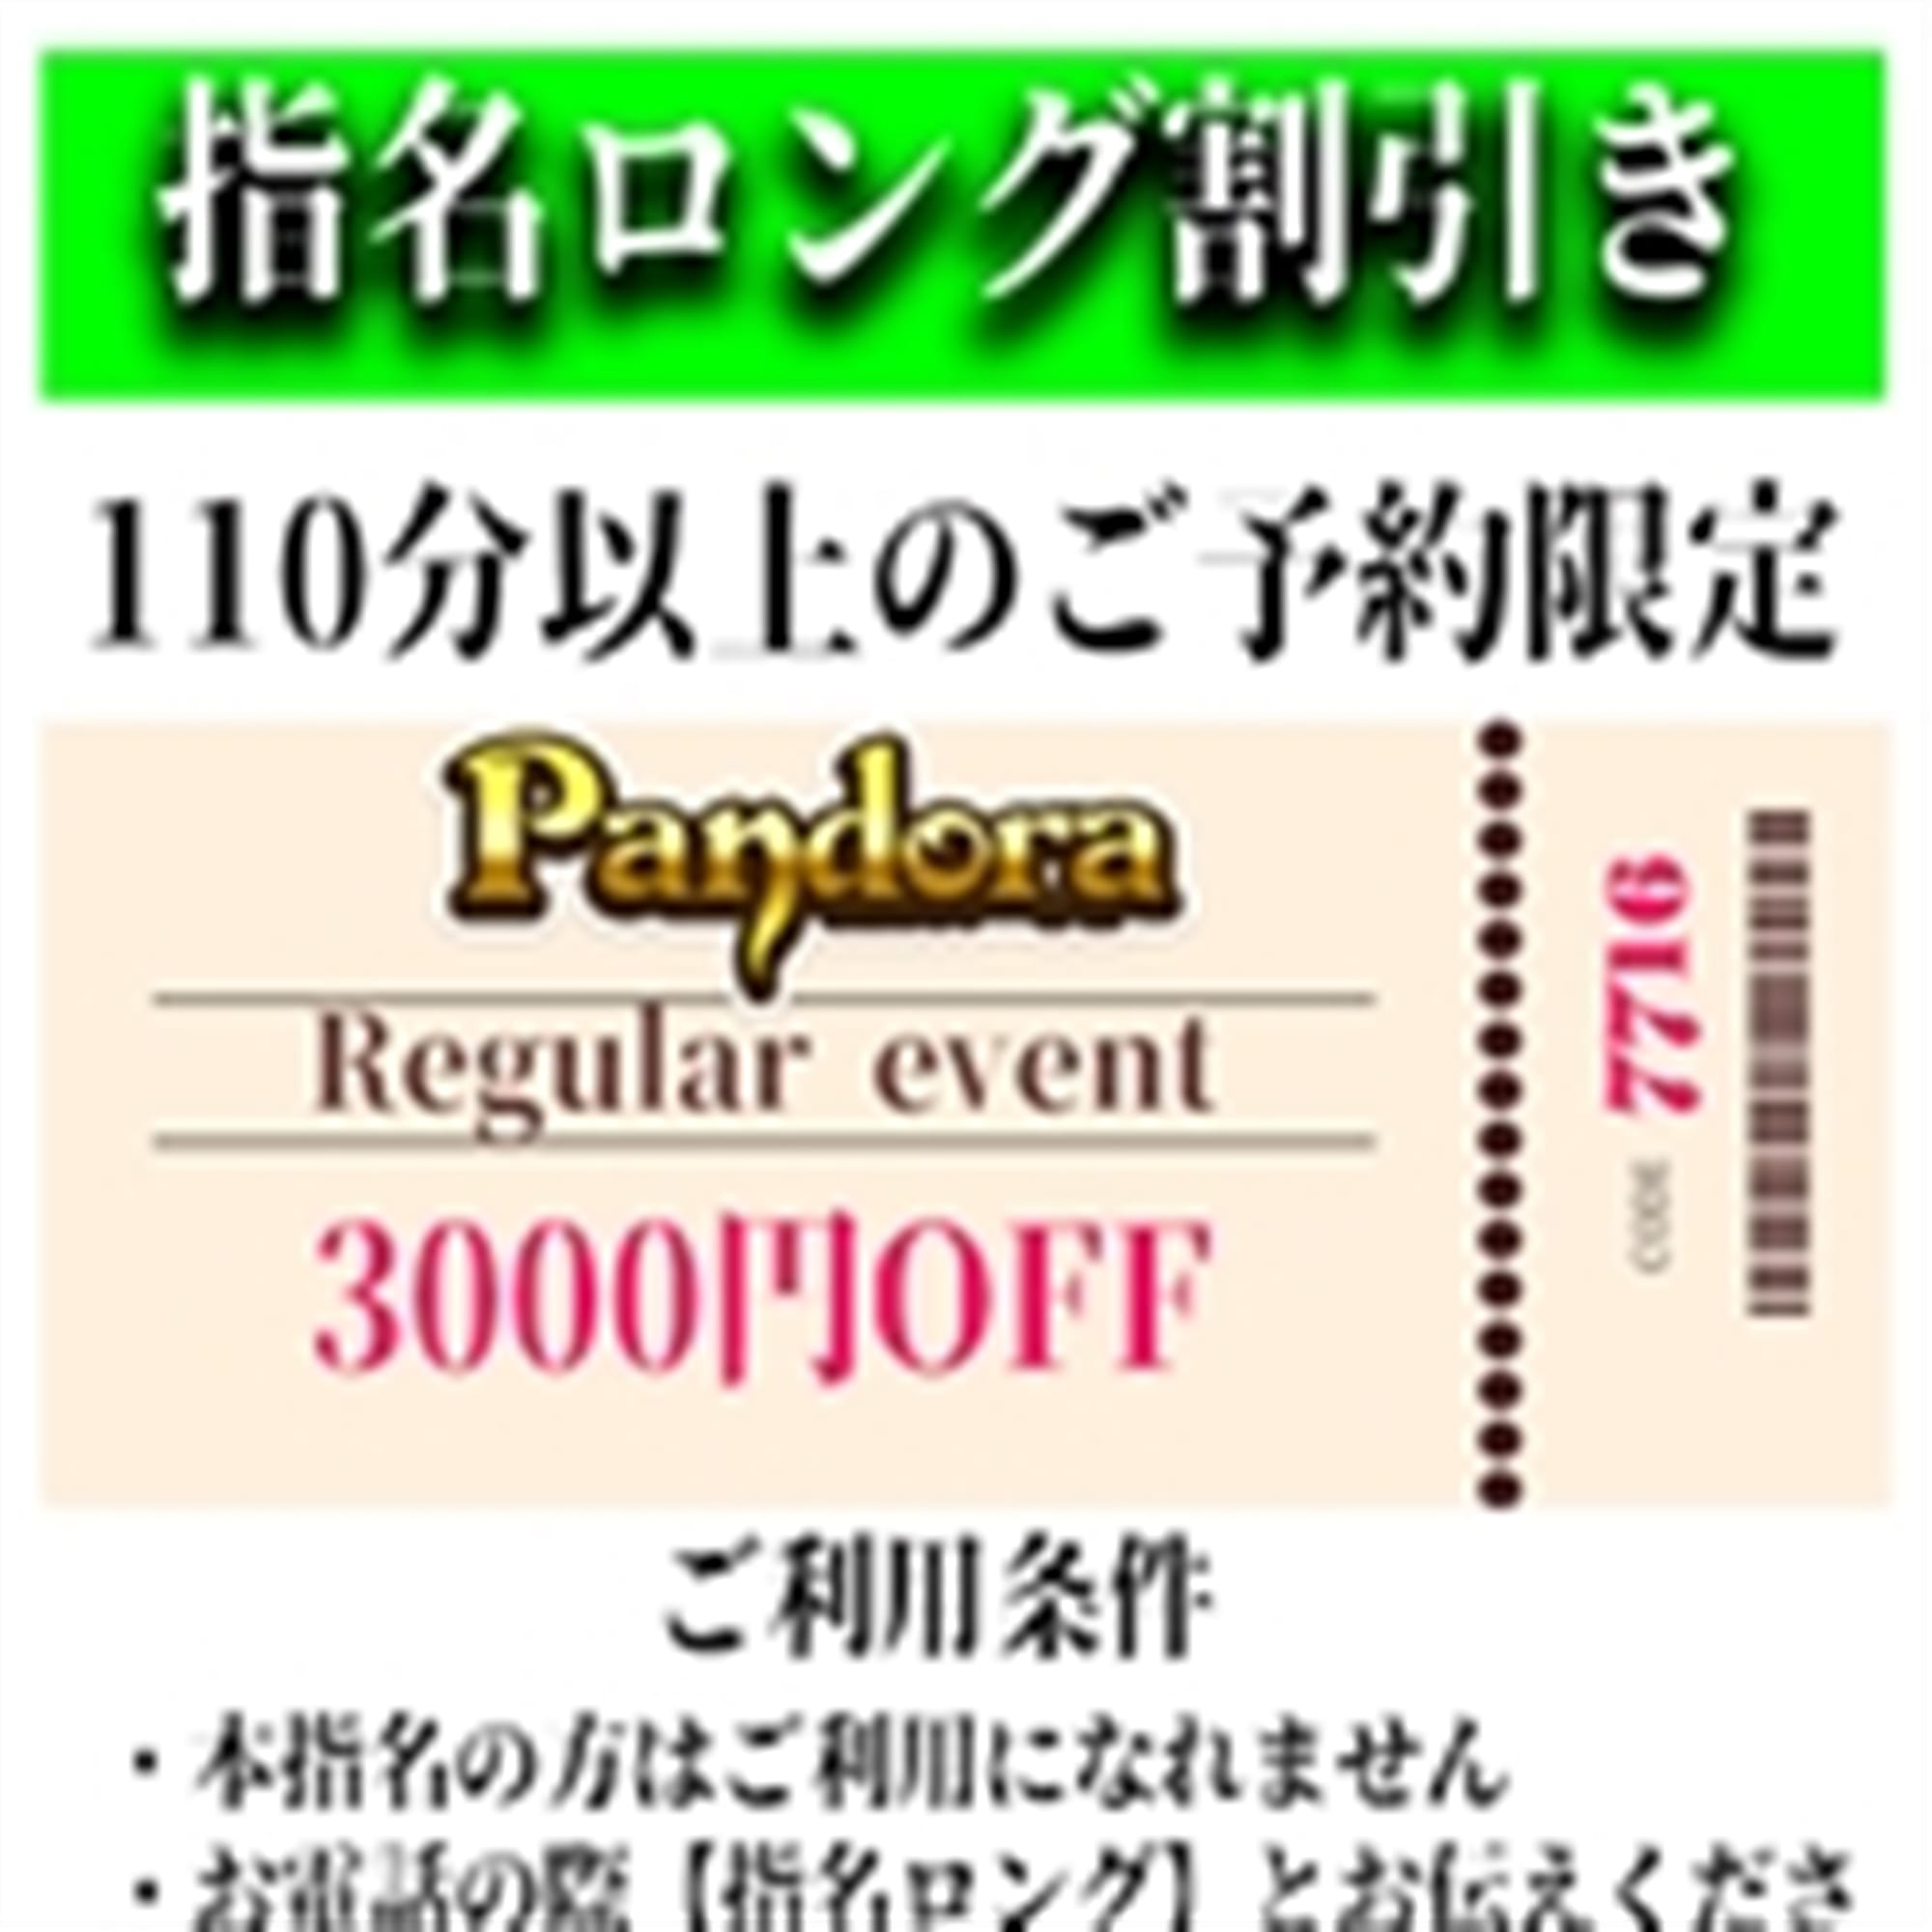 「ご指名のお客様も遊べるロングコース割引」04/17(水) 01:43 | Pandora(パンドラ)新潟のお得なニュース